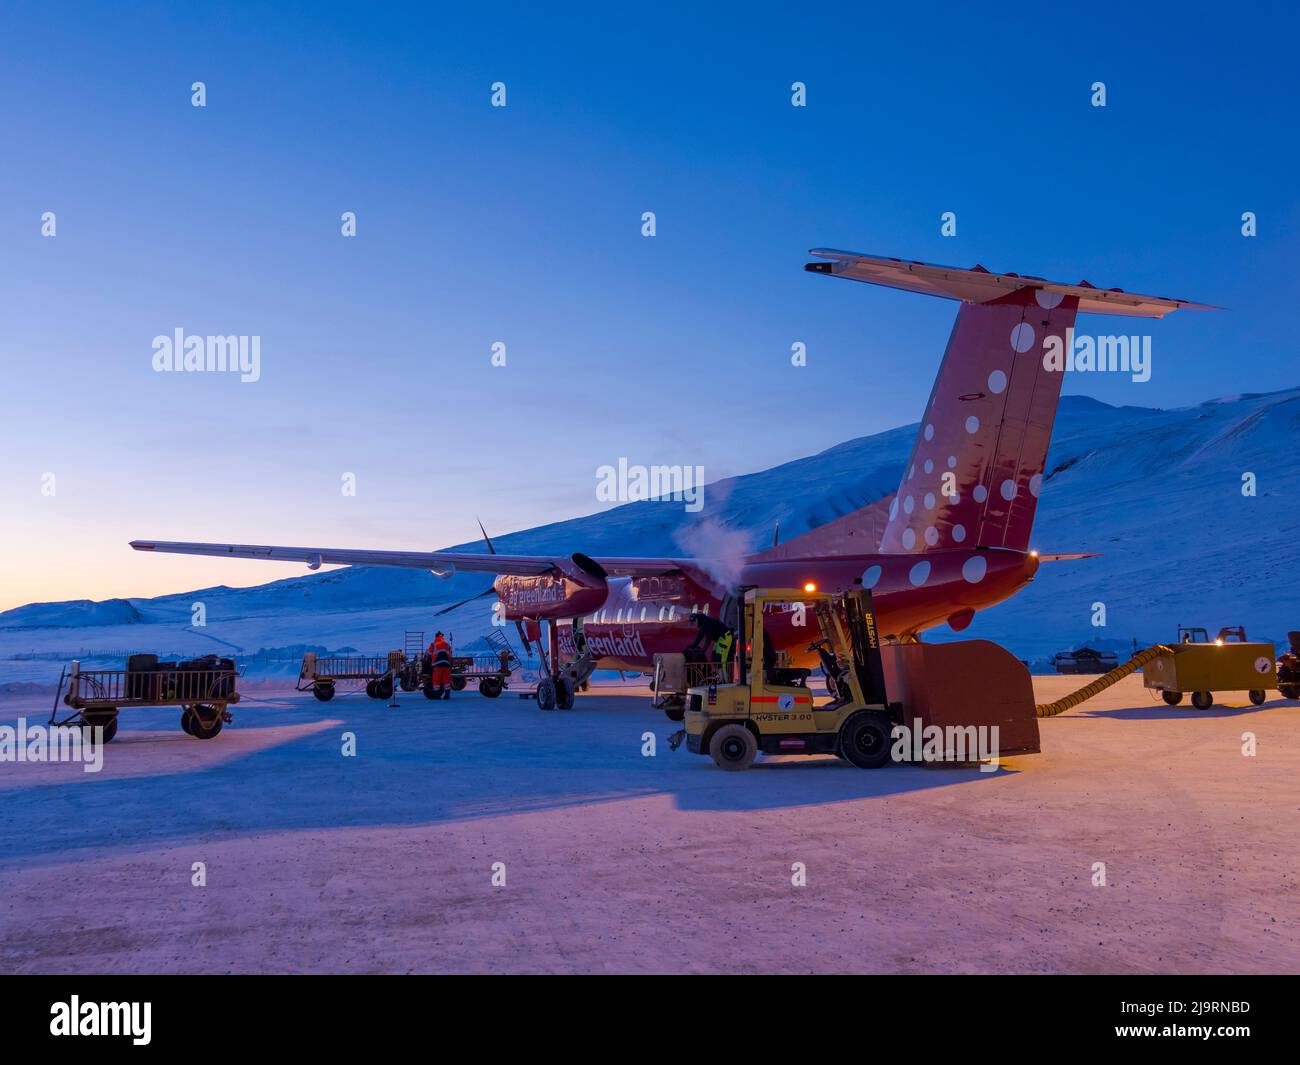 Air Groenland Dash 7. L'aéroport de Qaarsut près d'Uummannaq pendant l'hiver dans le nord-ouest du Groenland, au-delà du cercle arctique. Groenland, territoire danois. ( Banque D'Images